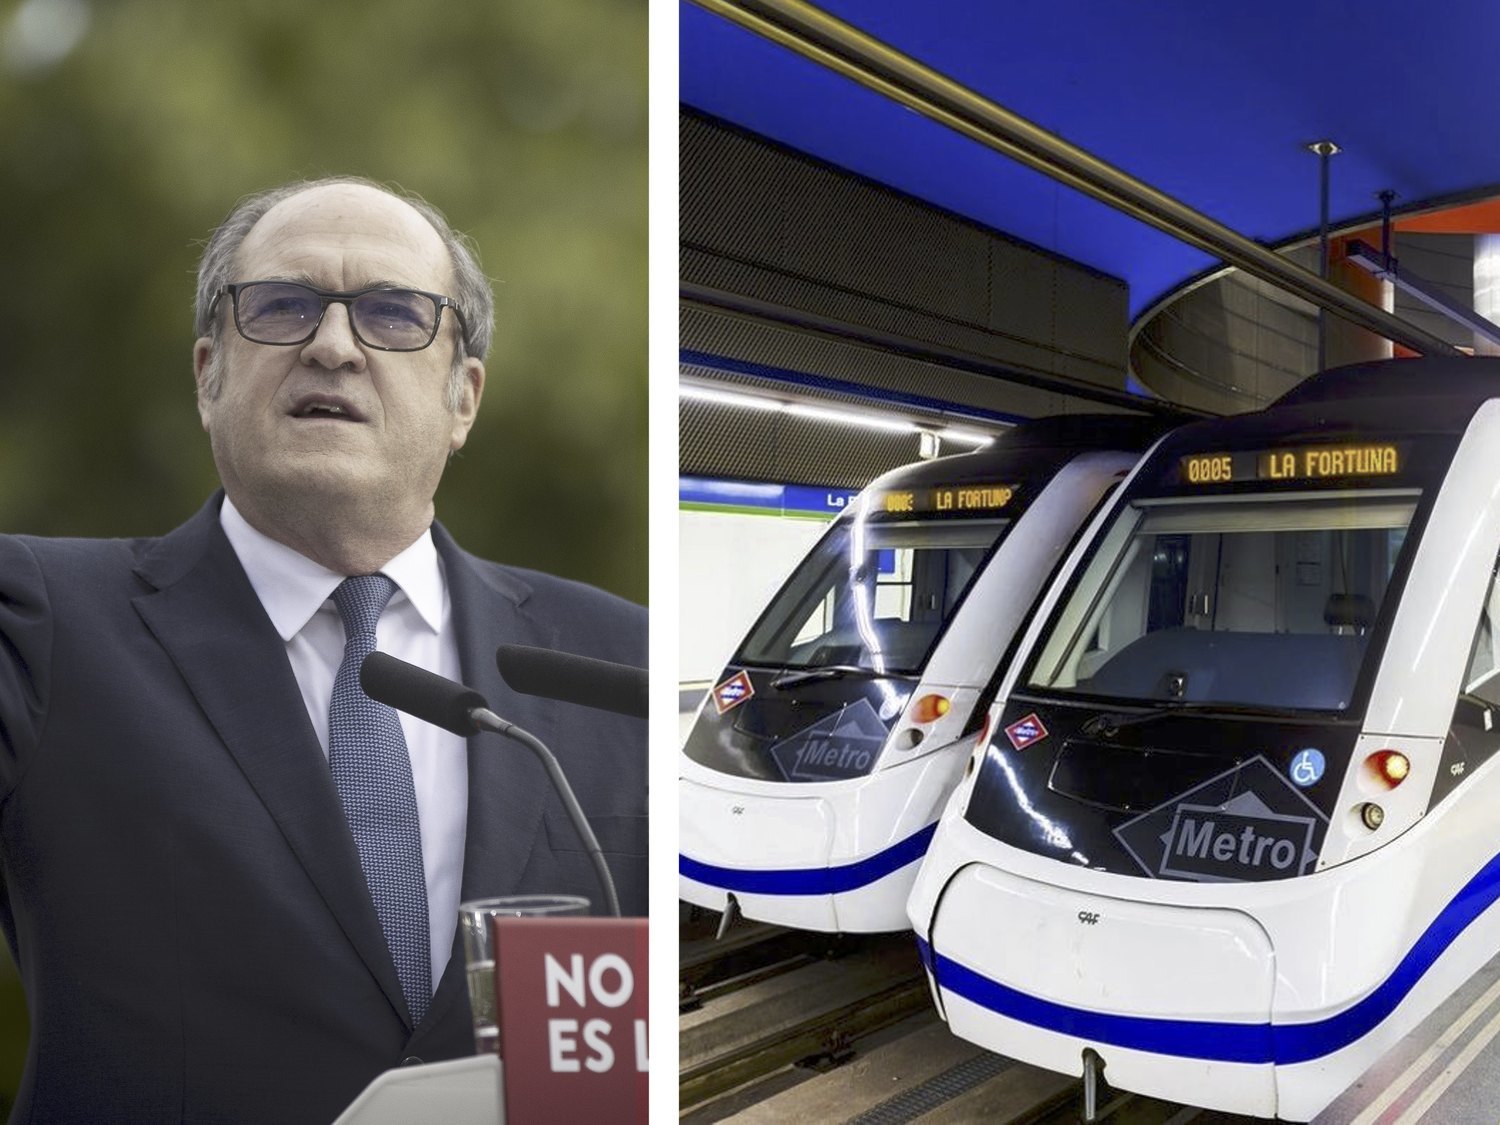 Gabilondo (PSOE) extenderá el abono transporte para todas las zonas por 20 euros hasta los 31 años